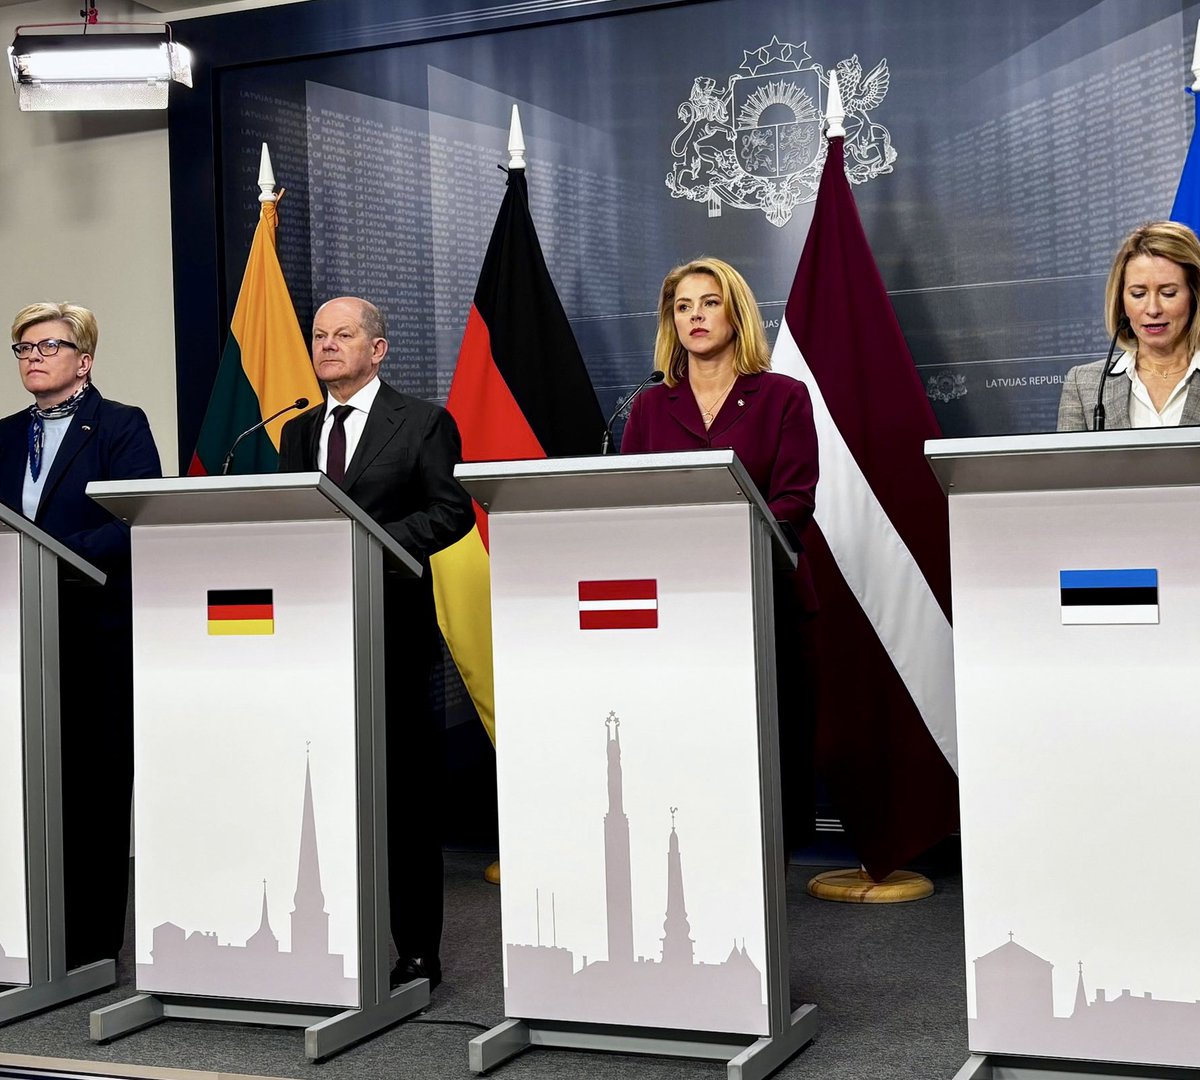 Bild mit Seltenheitswert: Beim Treffen mit den baltischen Regierungschefinnen Šimonytė (Litauen), Silina (Lettland) und Kallas (Estland) in Riga ist Olaf Scholz der einzige Mann in der Runde.